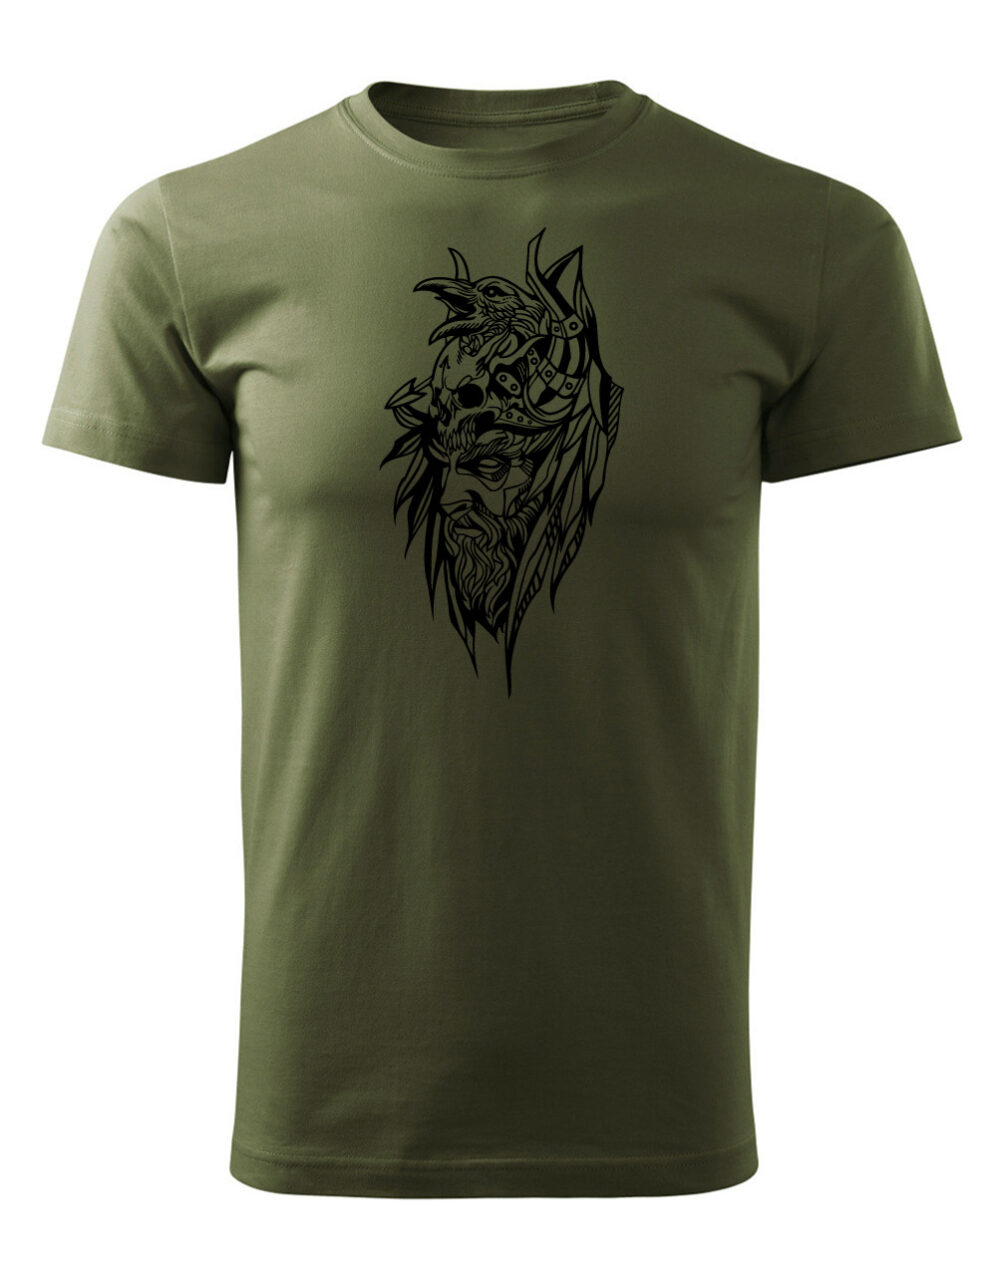 Pánské tričko s potiskem Bojovník vojenská zelená